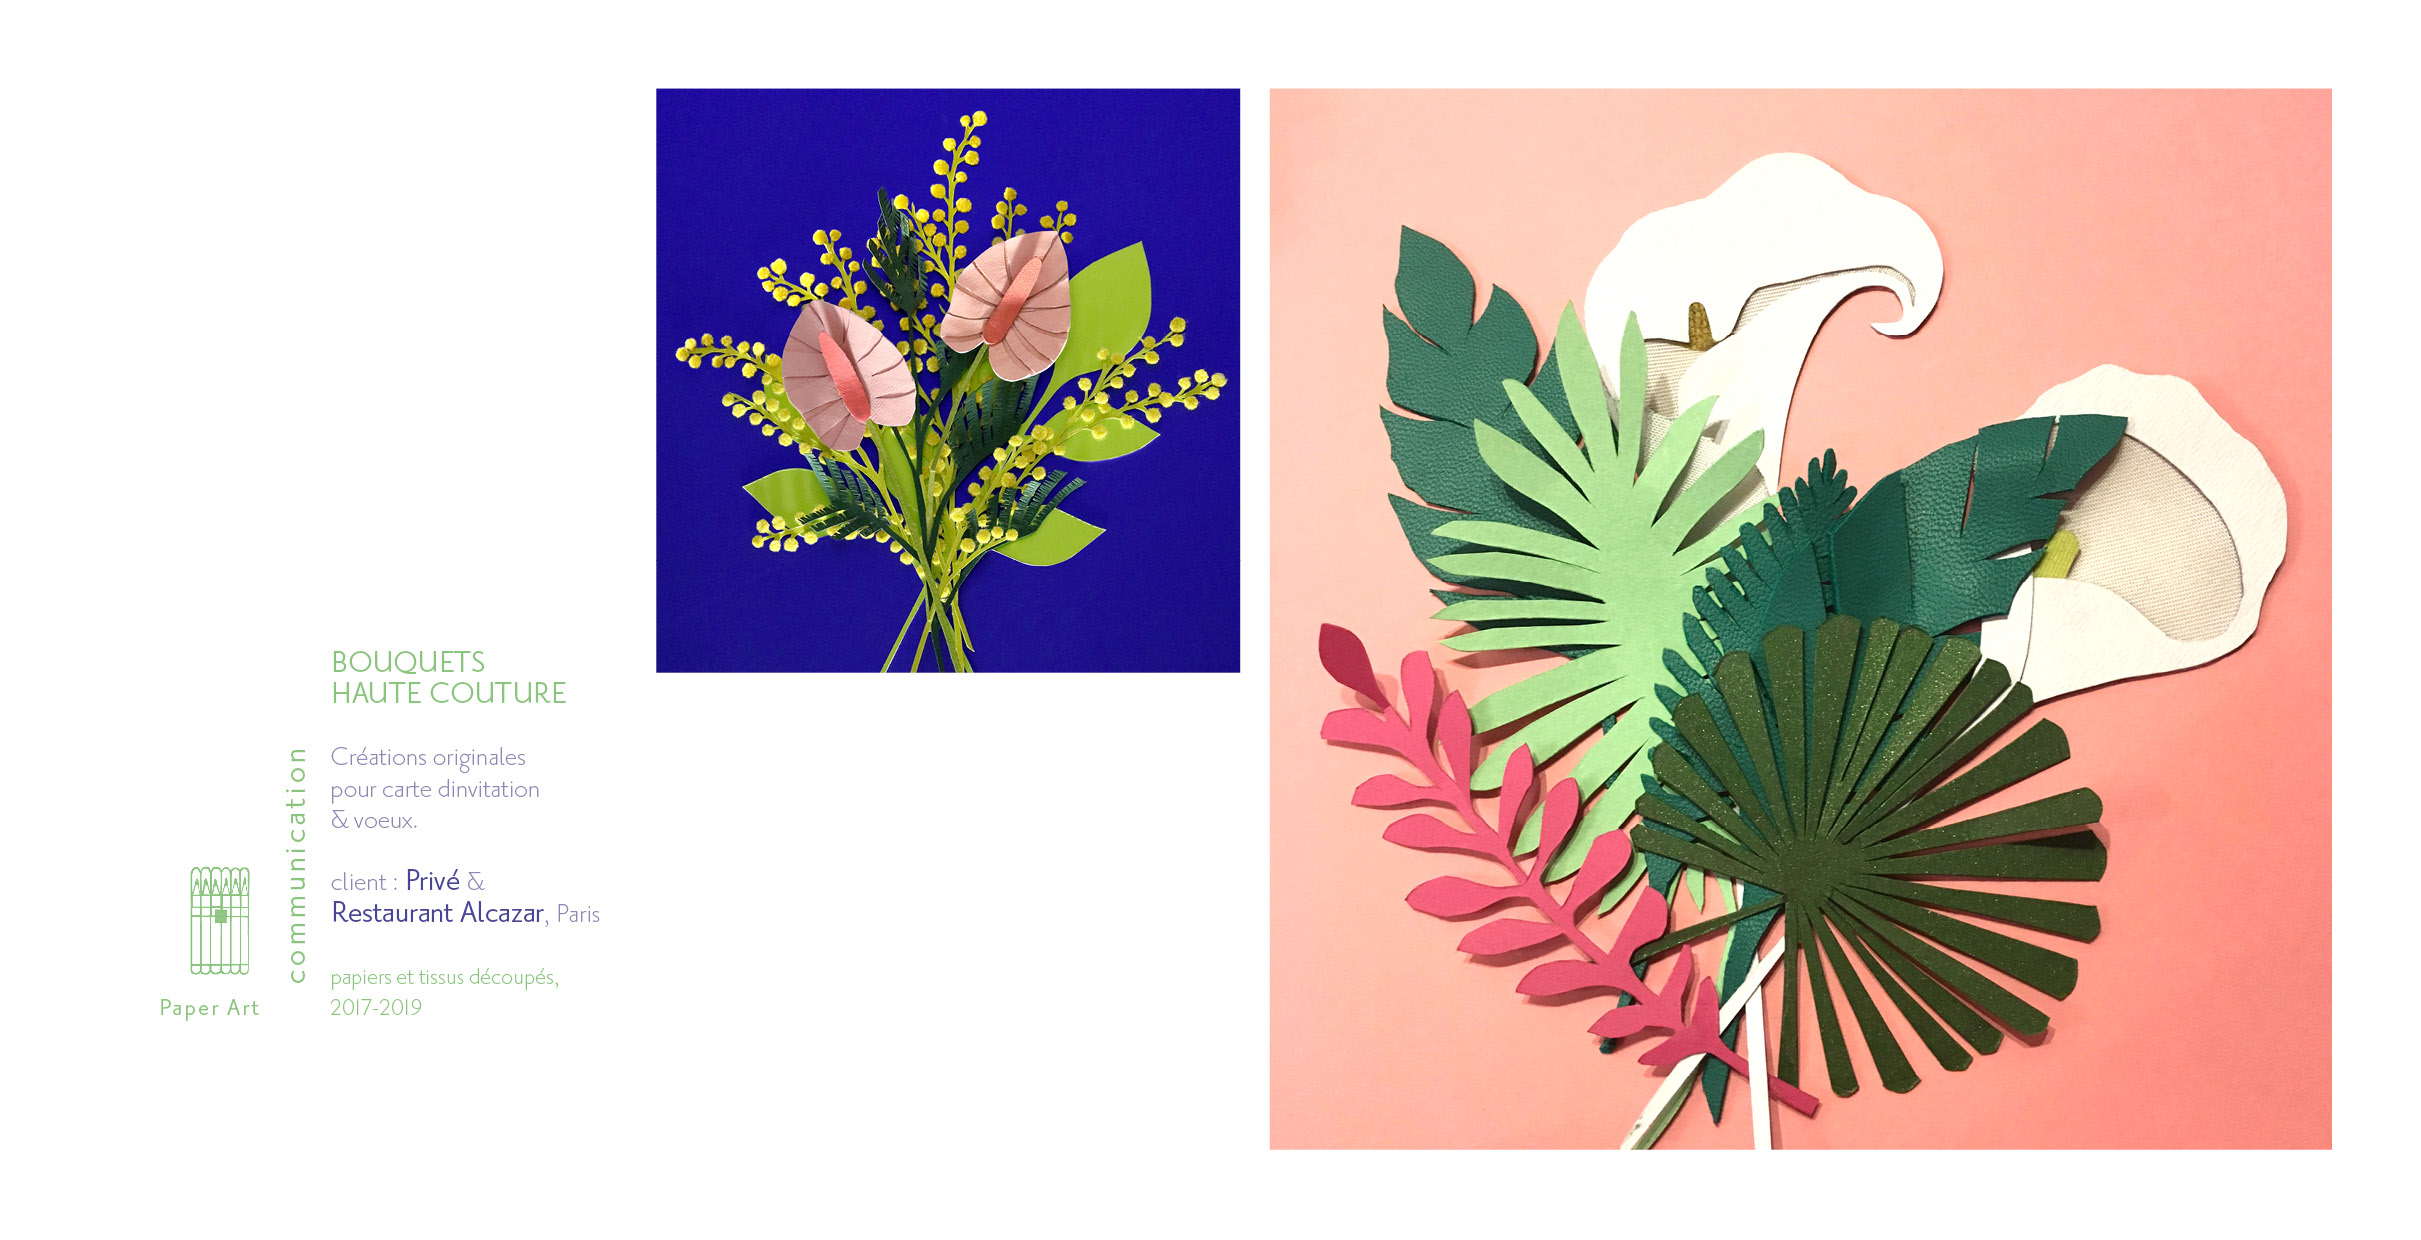 Illustration / Paper Art : "Bouquets"